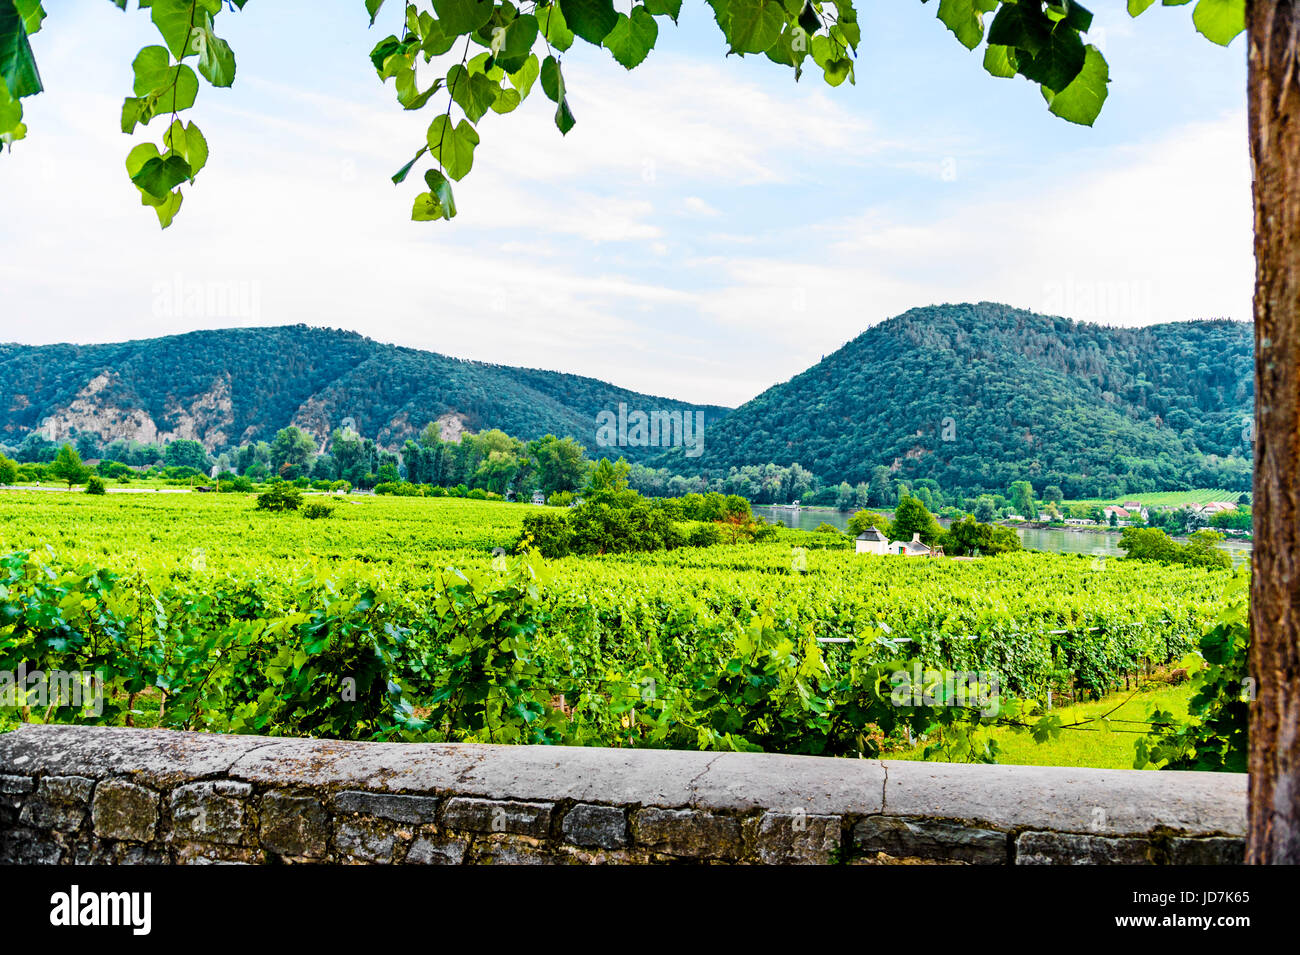 Weinanbau in der Wachau nahe Dürnstein, Österreich; vineyard cultivation near Duernstein, austria Stock Photo